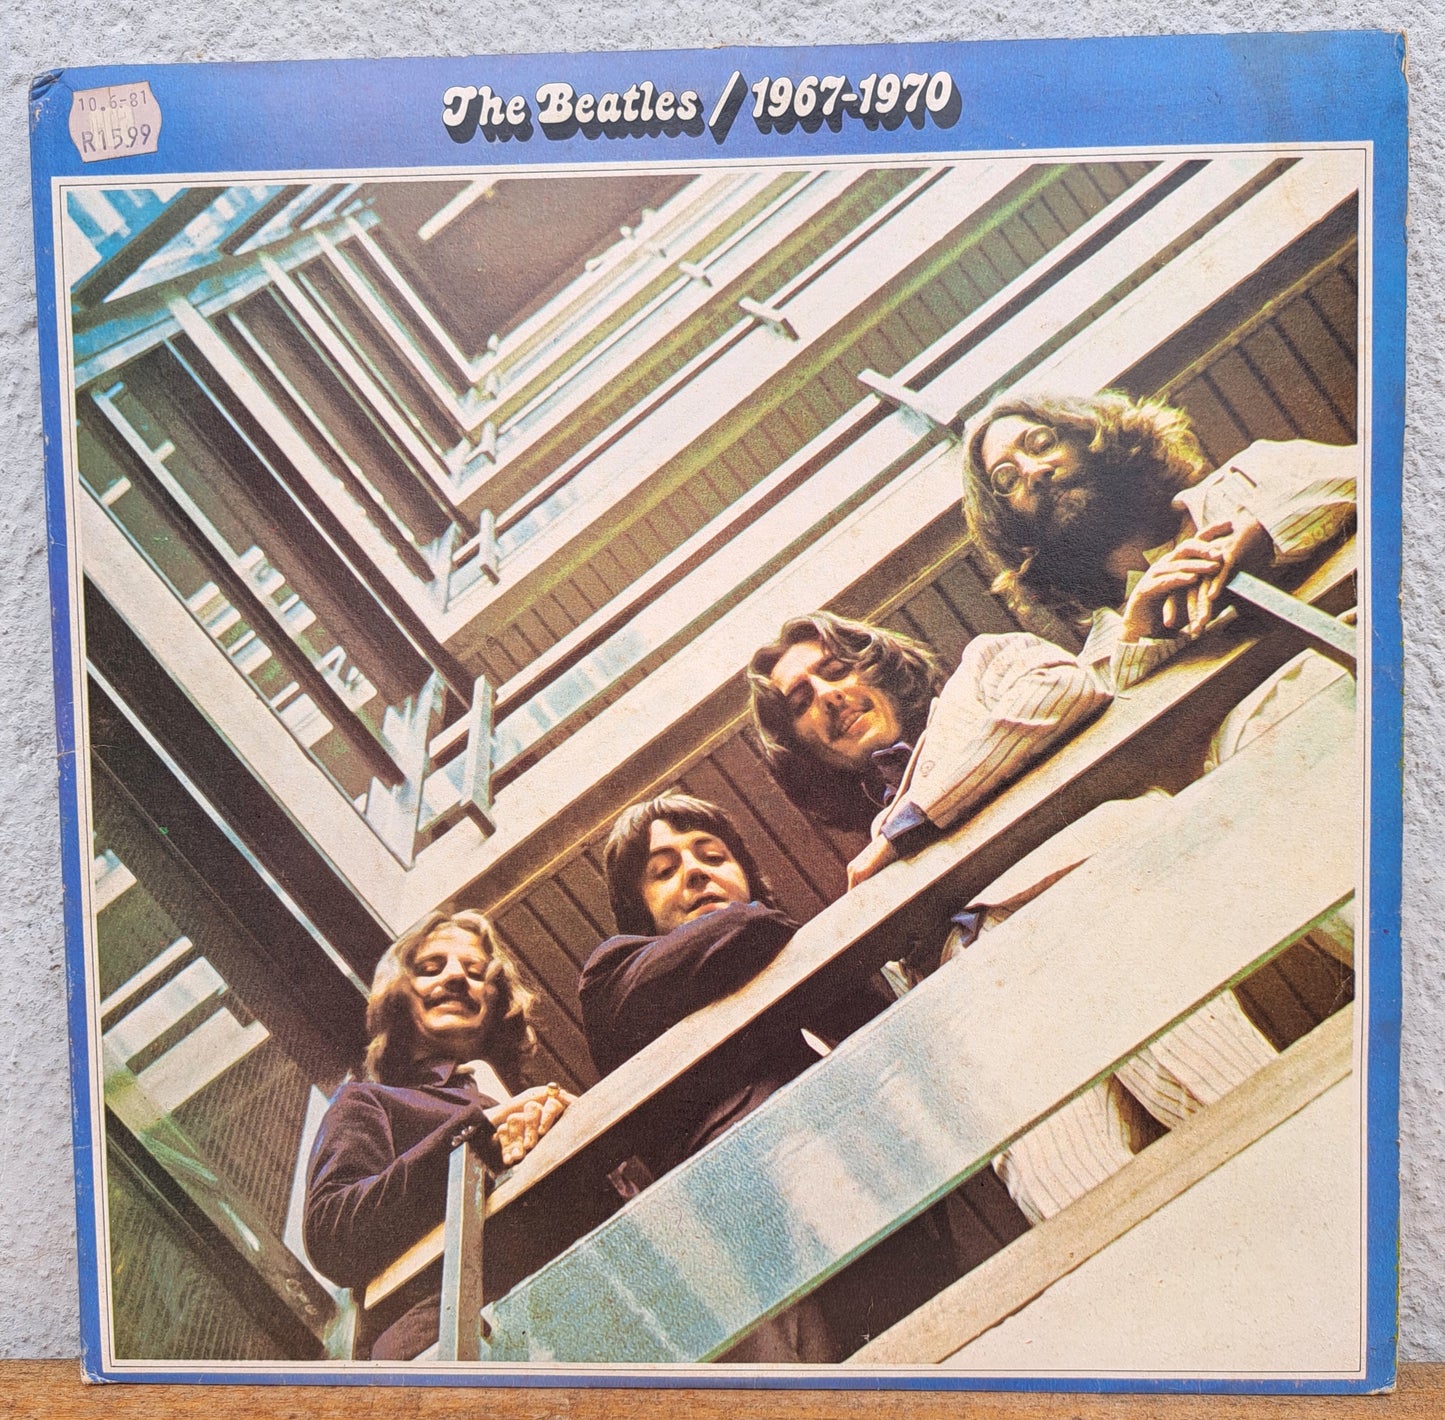 The Beatles 1967-1970 (double album)